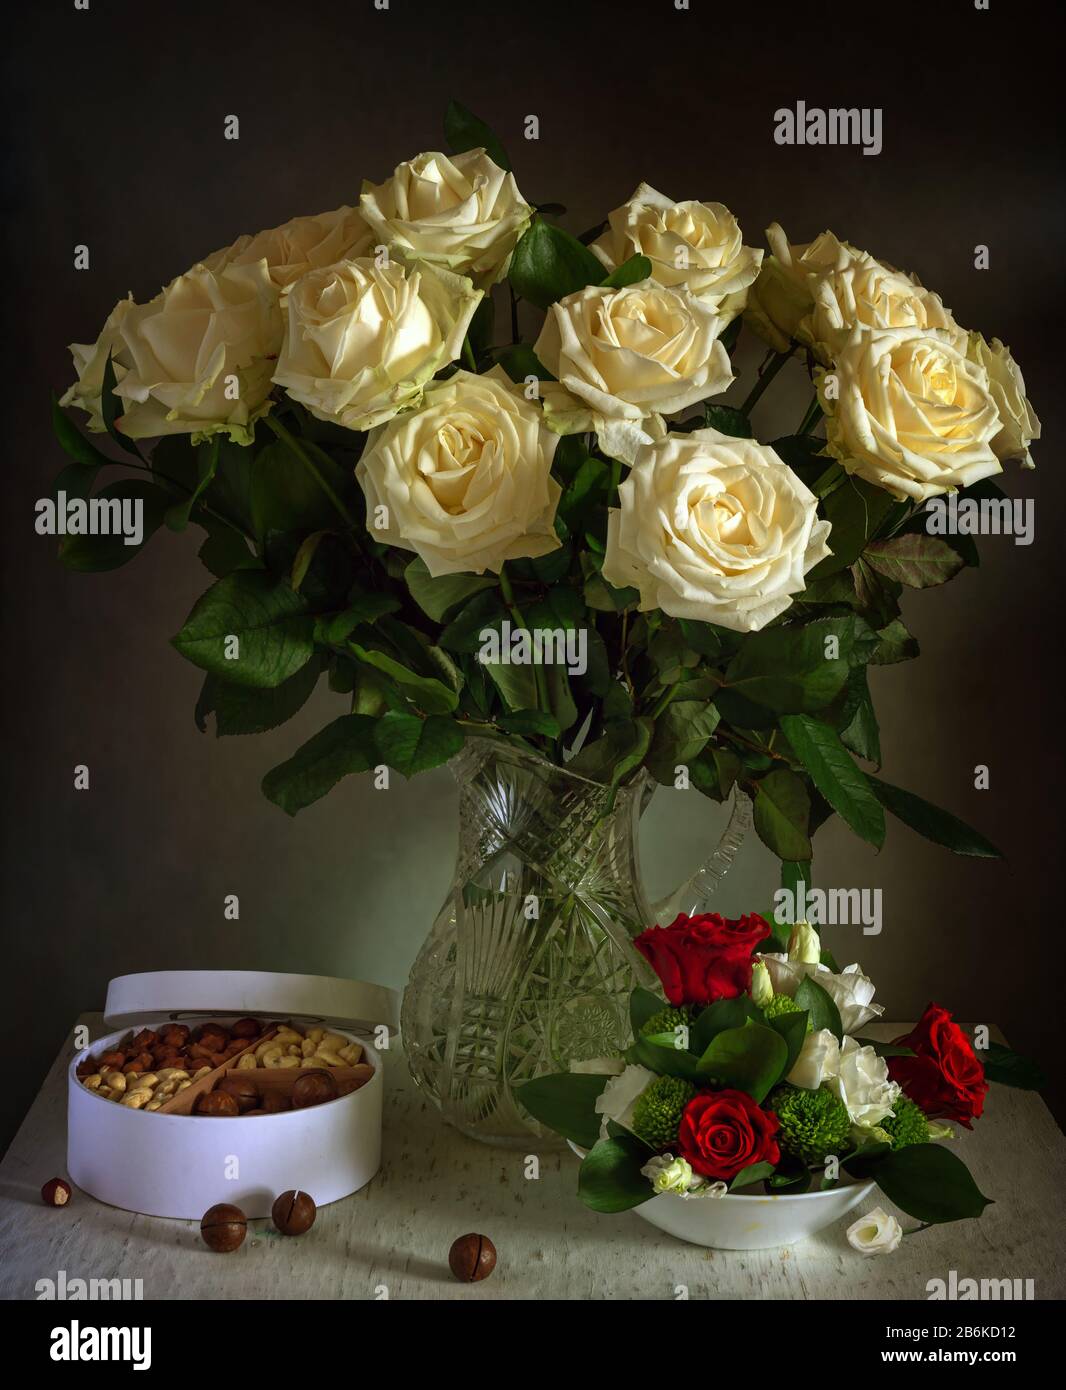 Un beau bouquet de roses dans une verseuse en cristal et une boîte aux fruits à coque savoureux. Toujours la vie. Vintage. Banque D'Images